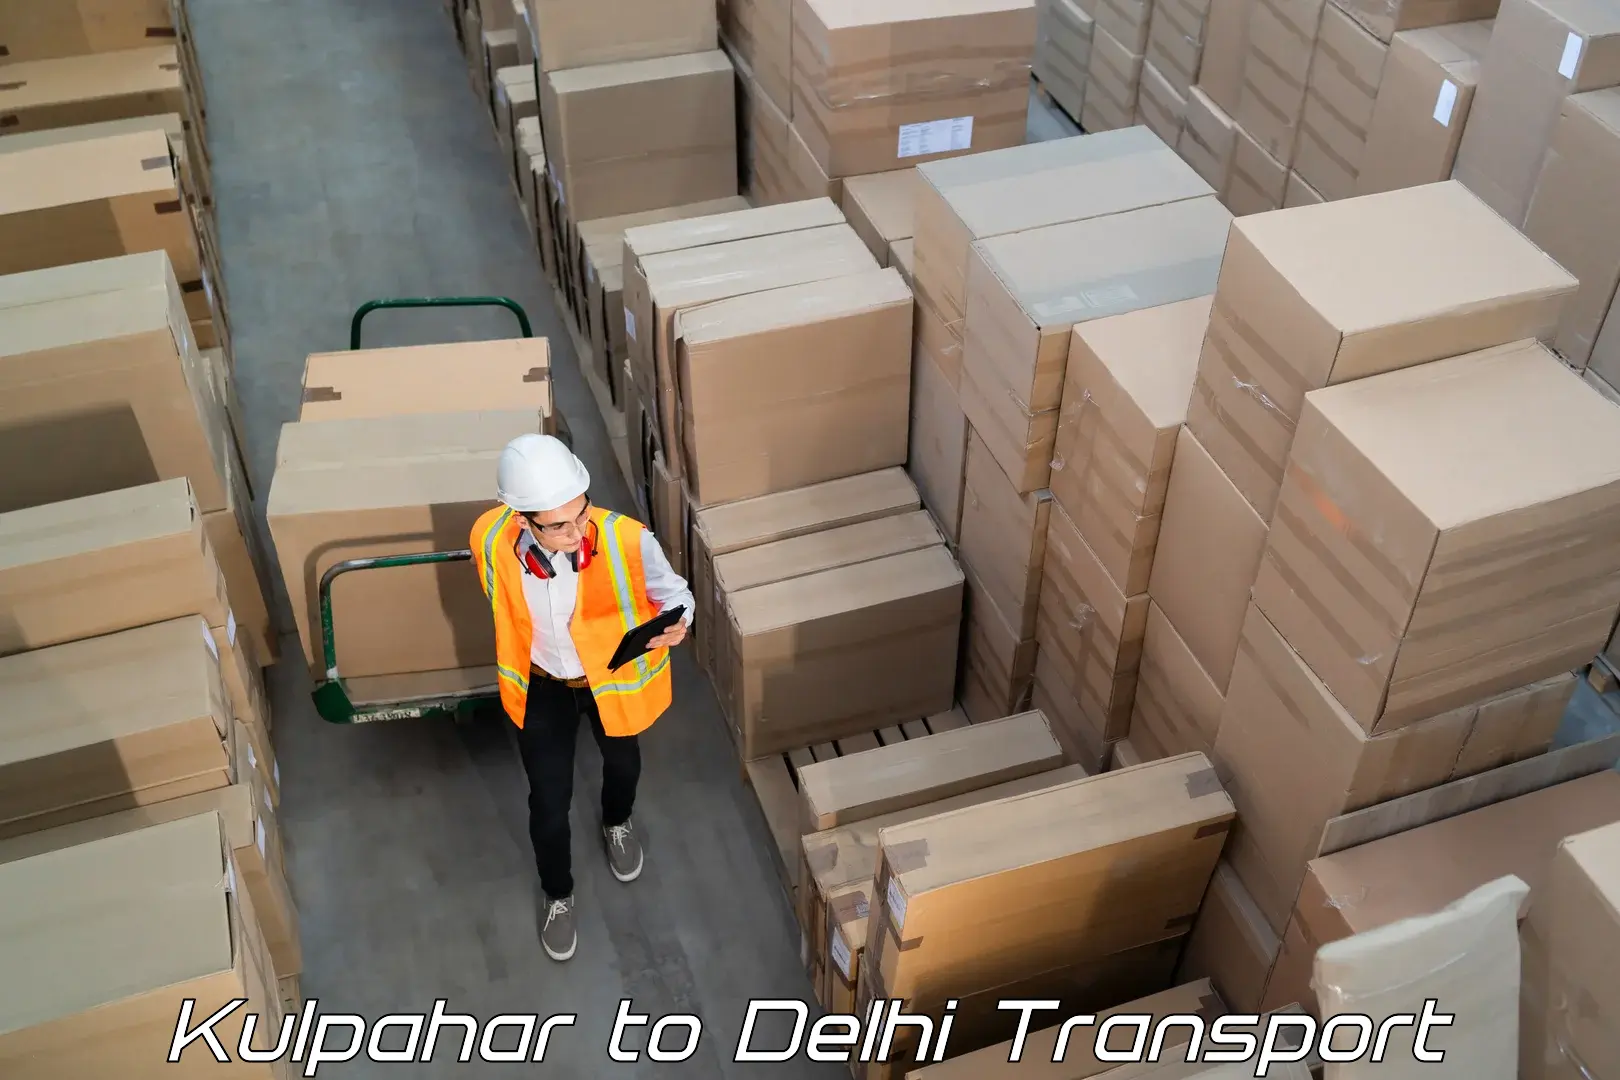 International cargo transportation services Kulpahar to East Delhi